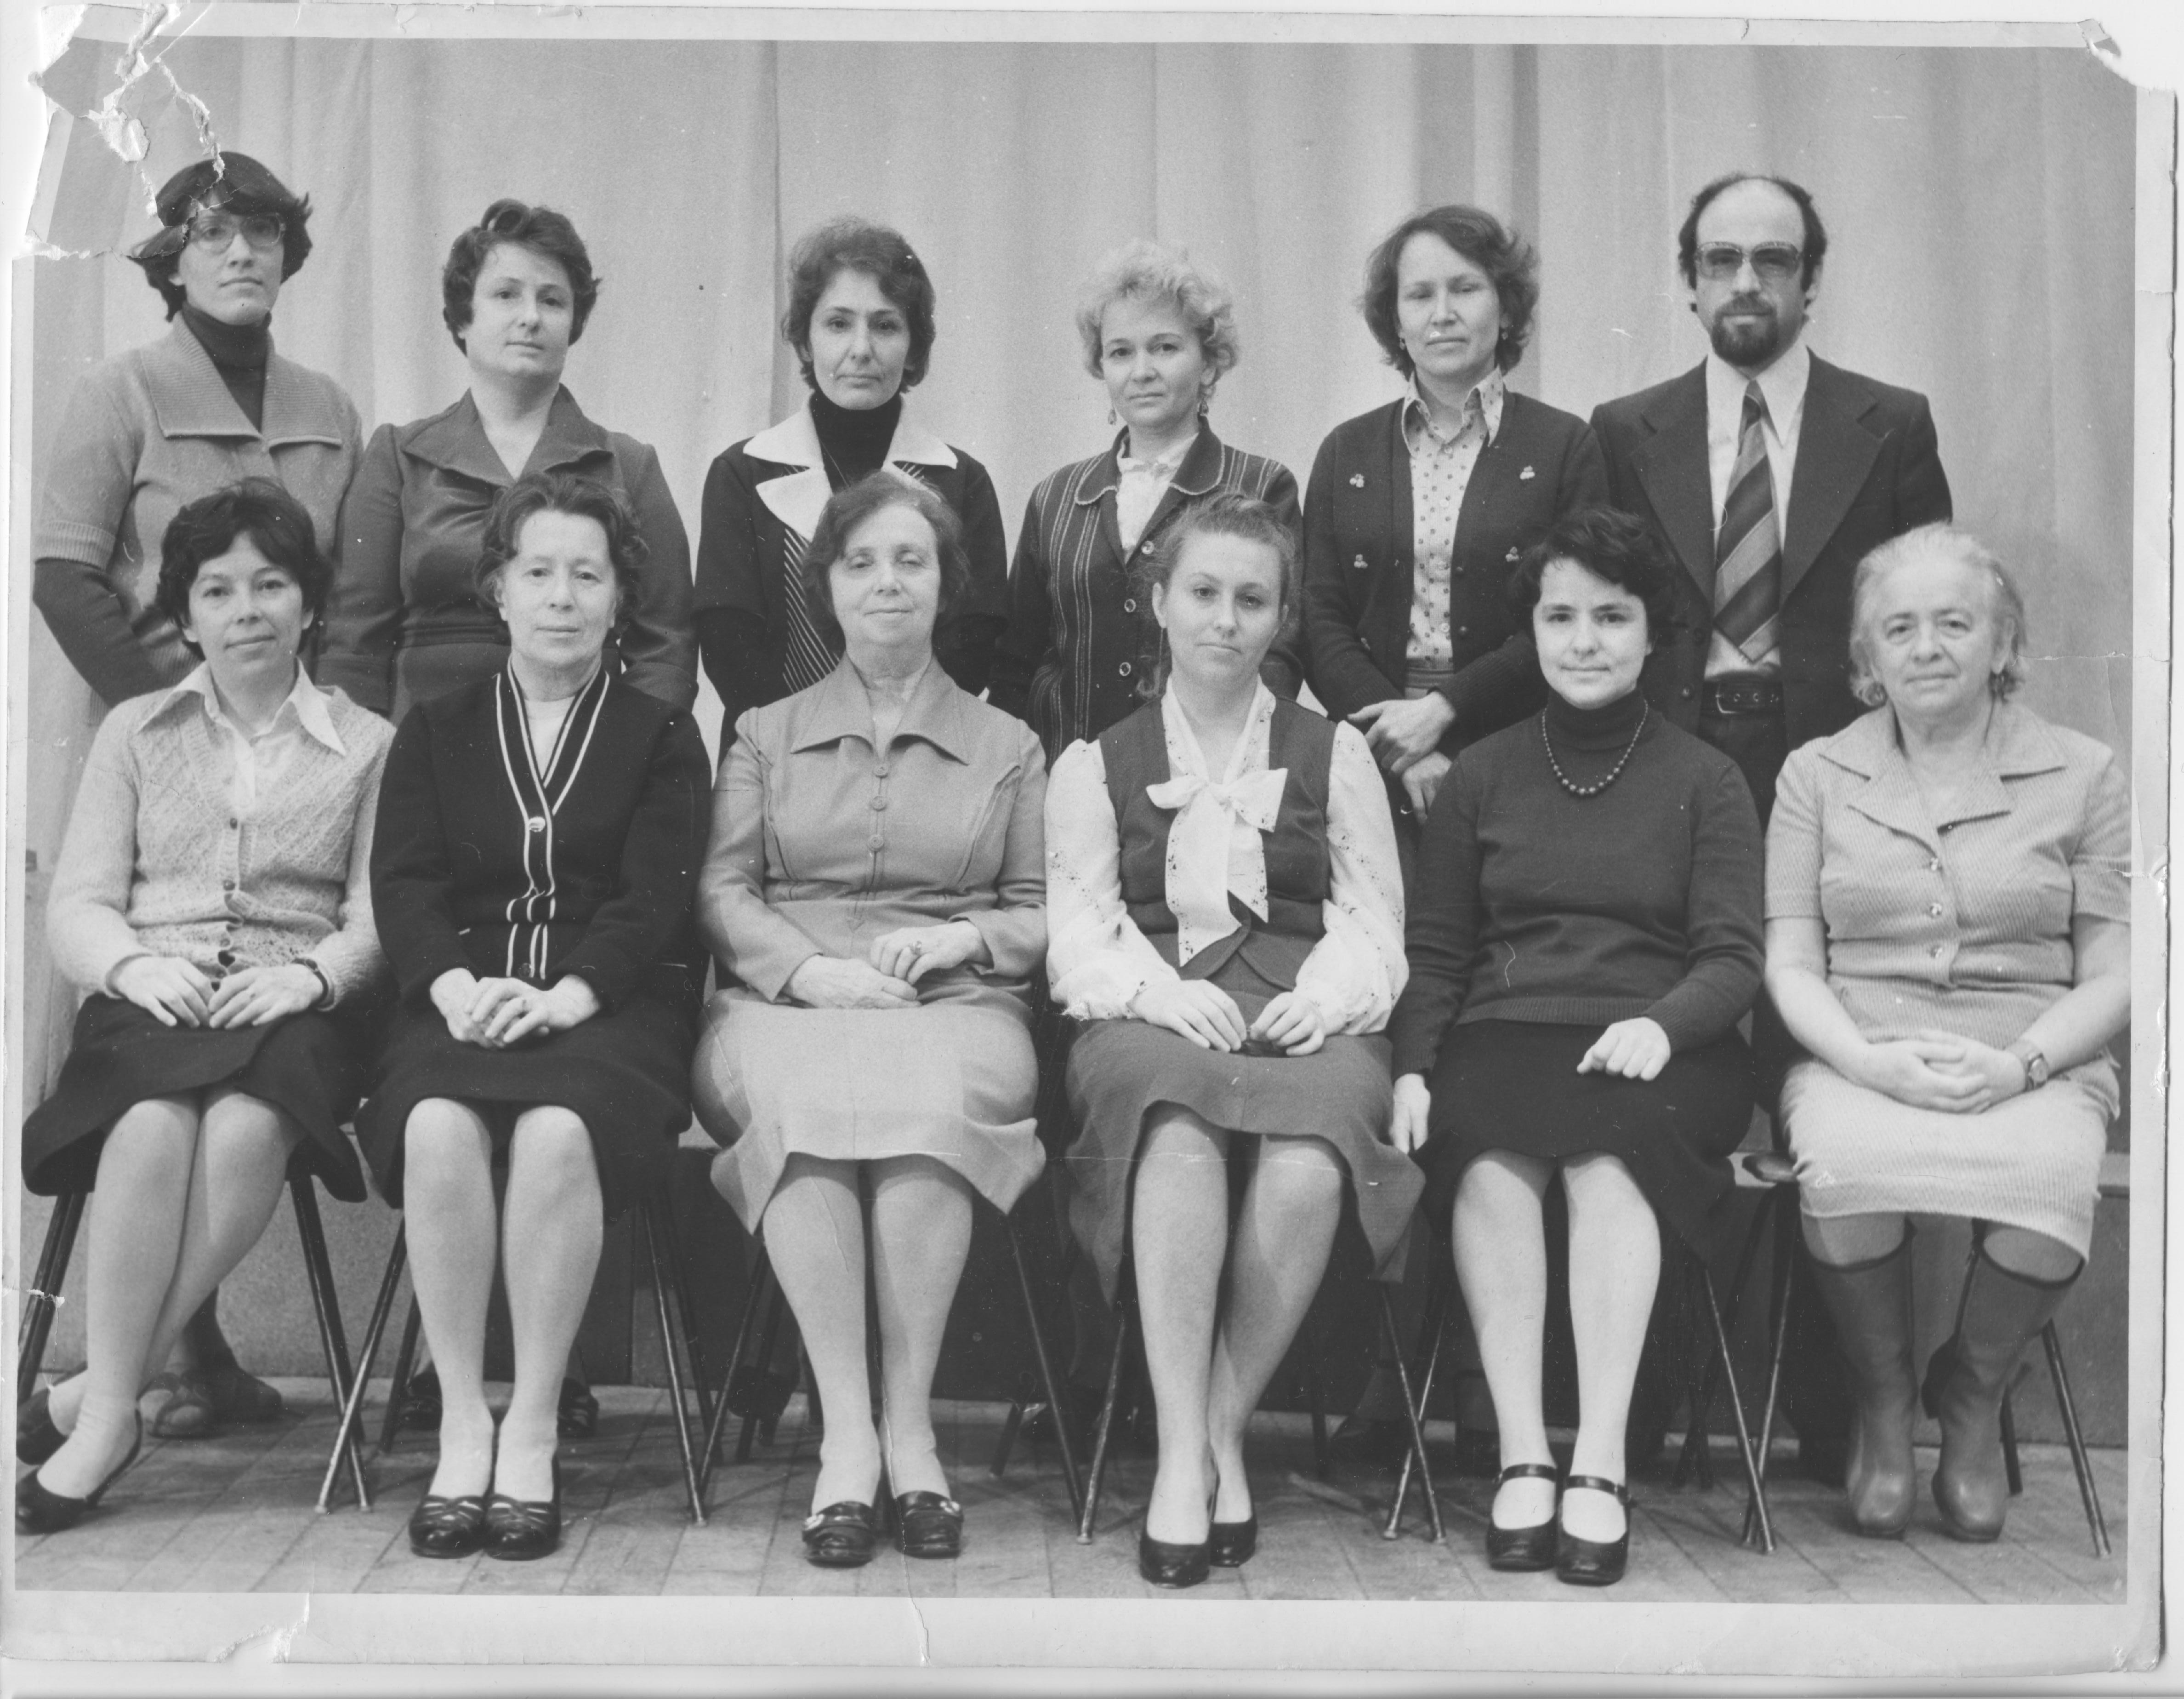 (На фото 1979 г. В первом ряду (слева направо): Н.А. Токарева, Е.Е. Герасимова, Д.С. Ходяшева, В.В. Галян, Л.А. Борисова, Т.М. Хазанзун. Стоят: Н.В. Гудзь, Т.И. Шадрова, Л.Е. Латышева, А.В. Фишер, Г.В. Герасимова, М.З. Хазанзун.)